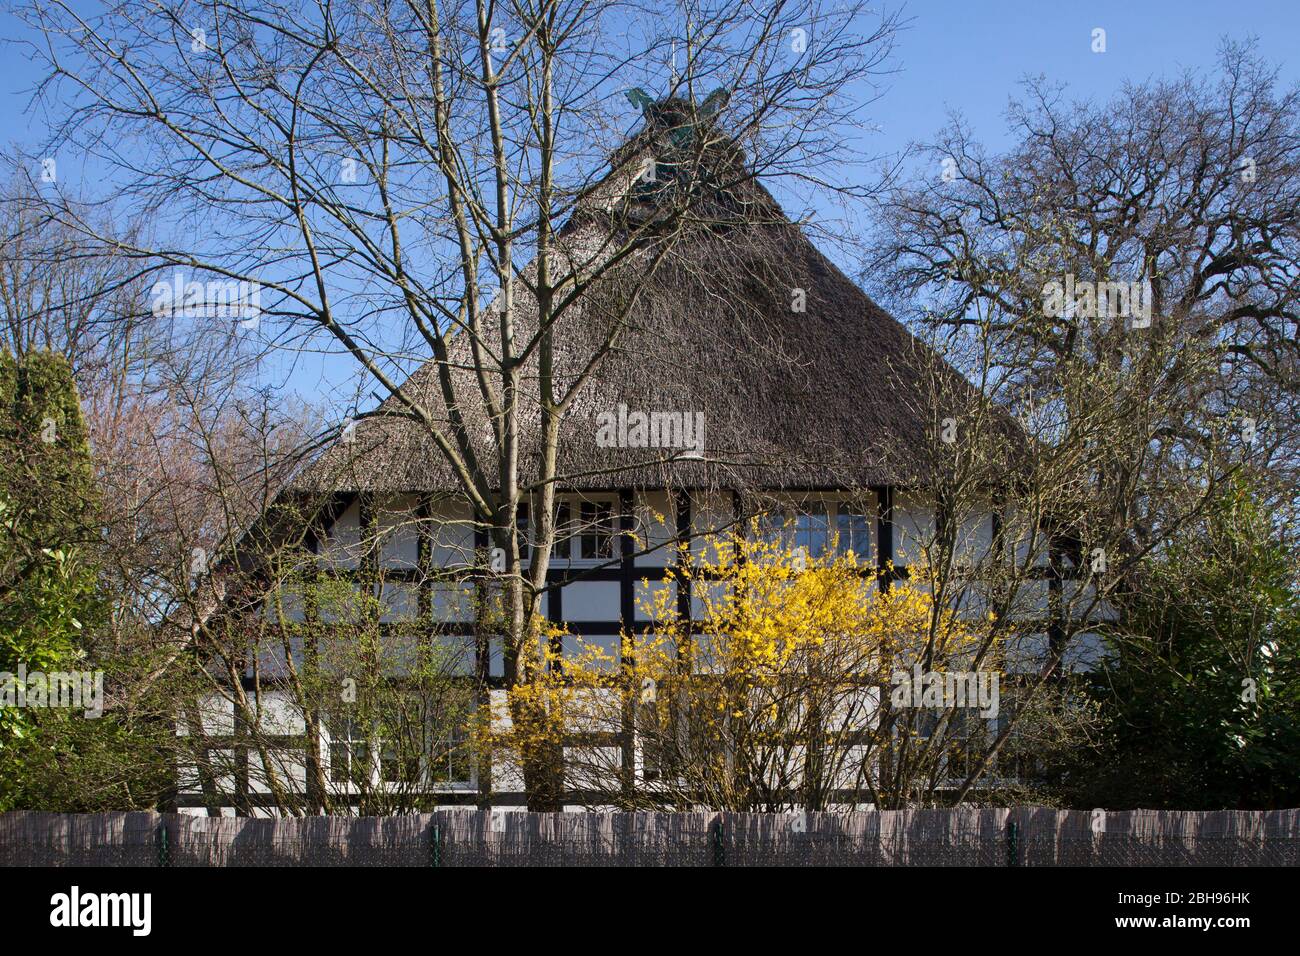 Maison à colombages, ancienne ferme du printemps, Oberneuland, Bremen, Deutschland, Europa Banque D'Images